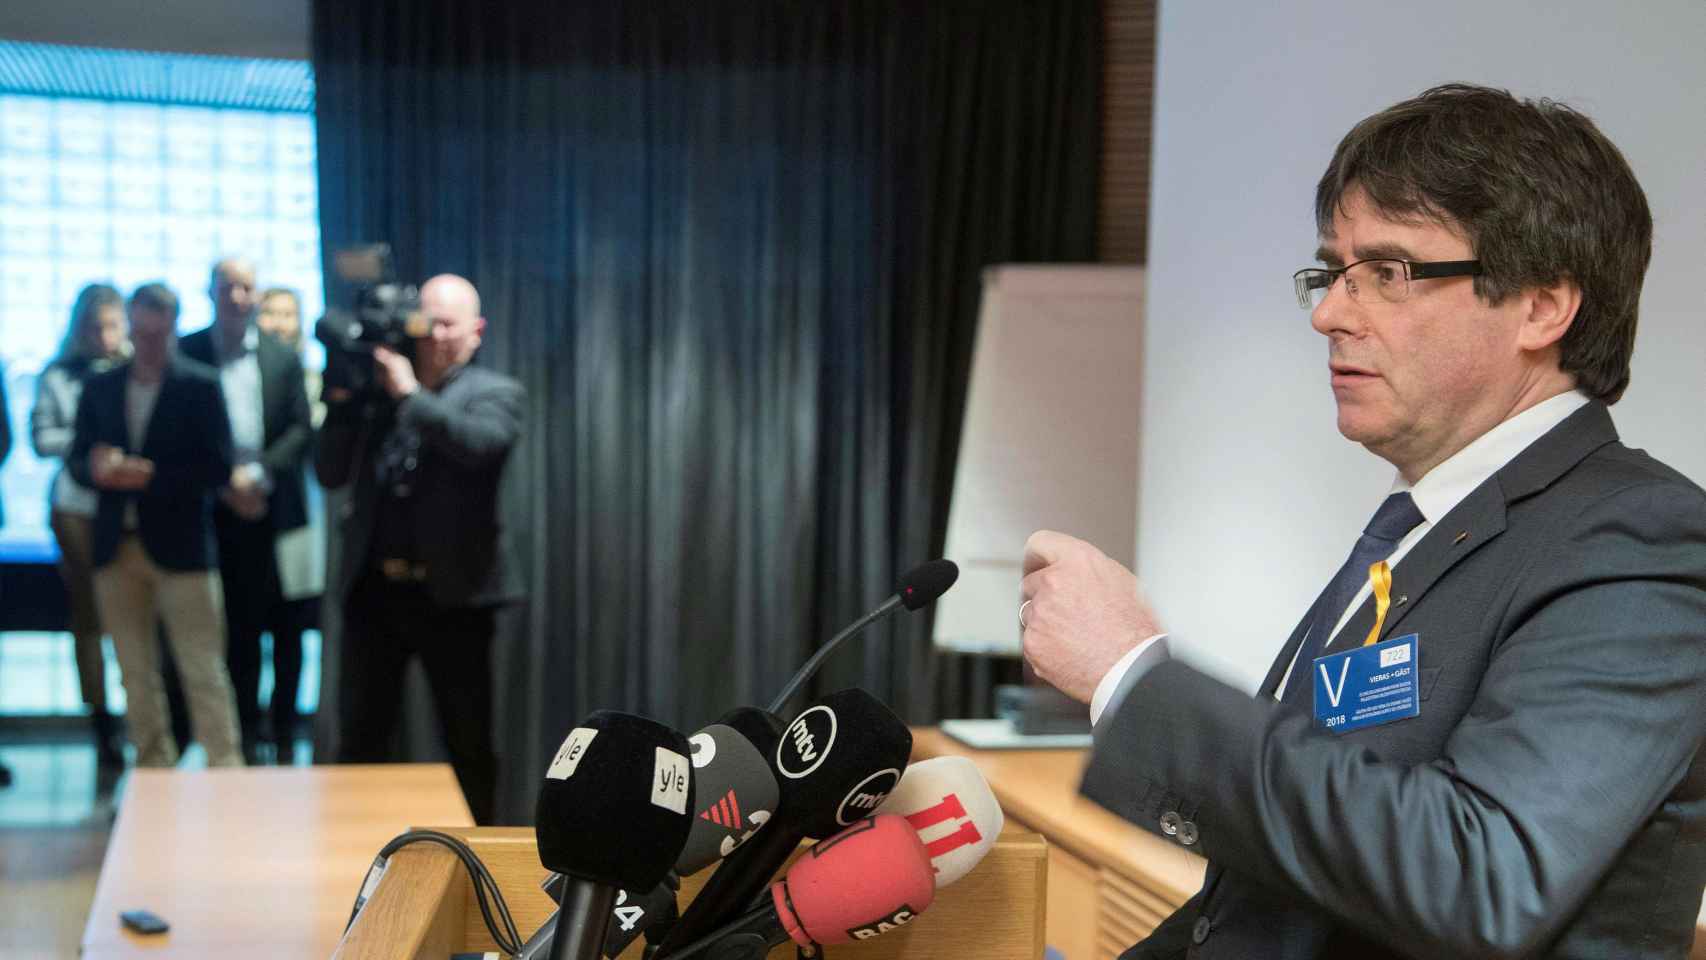 Carles Puigdemont, en la imagen durante su acto en Finlandia, ha sido detenido el domingo en Alemania / EFE MAURI RATILAINEN